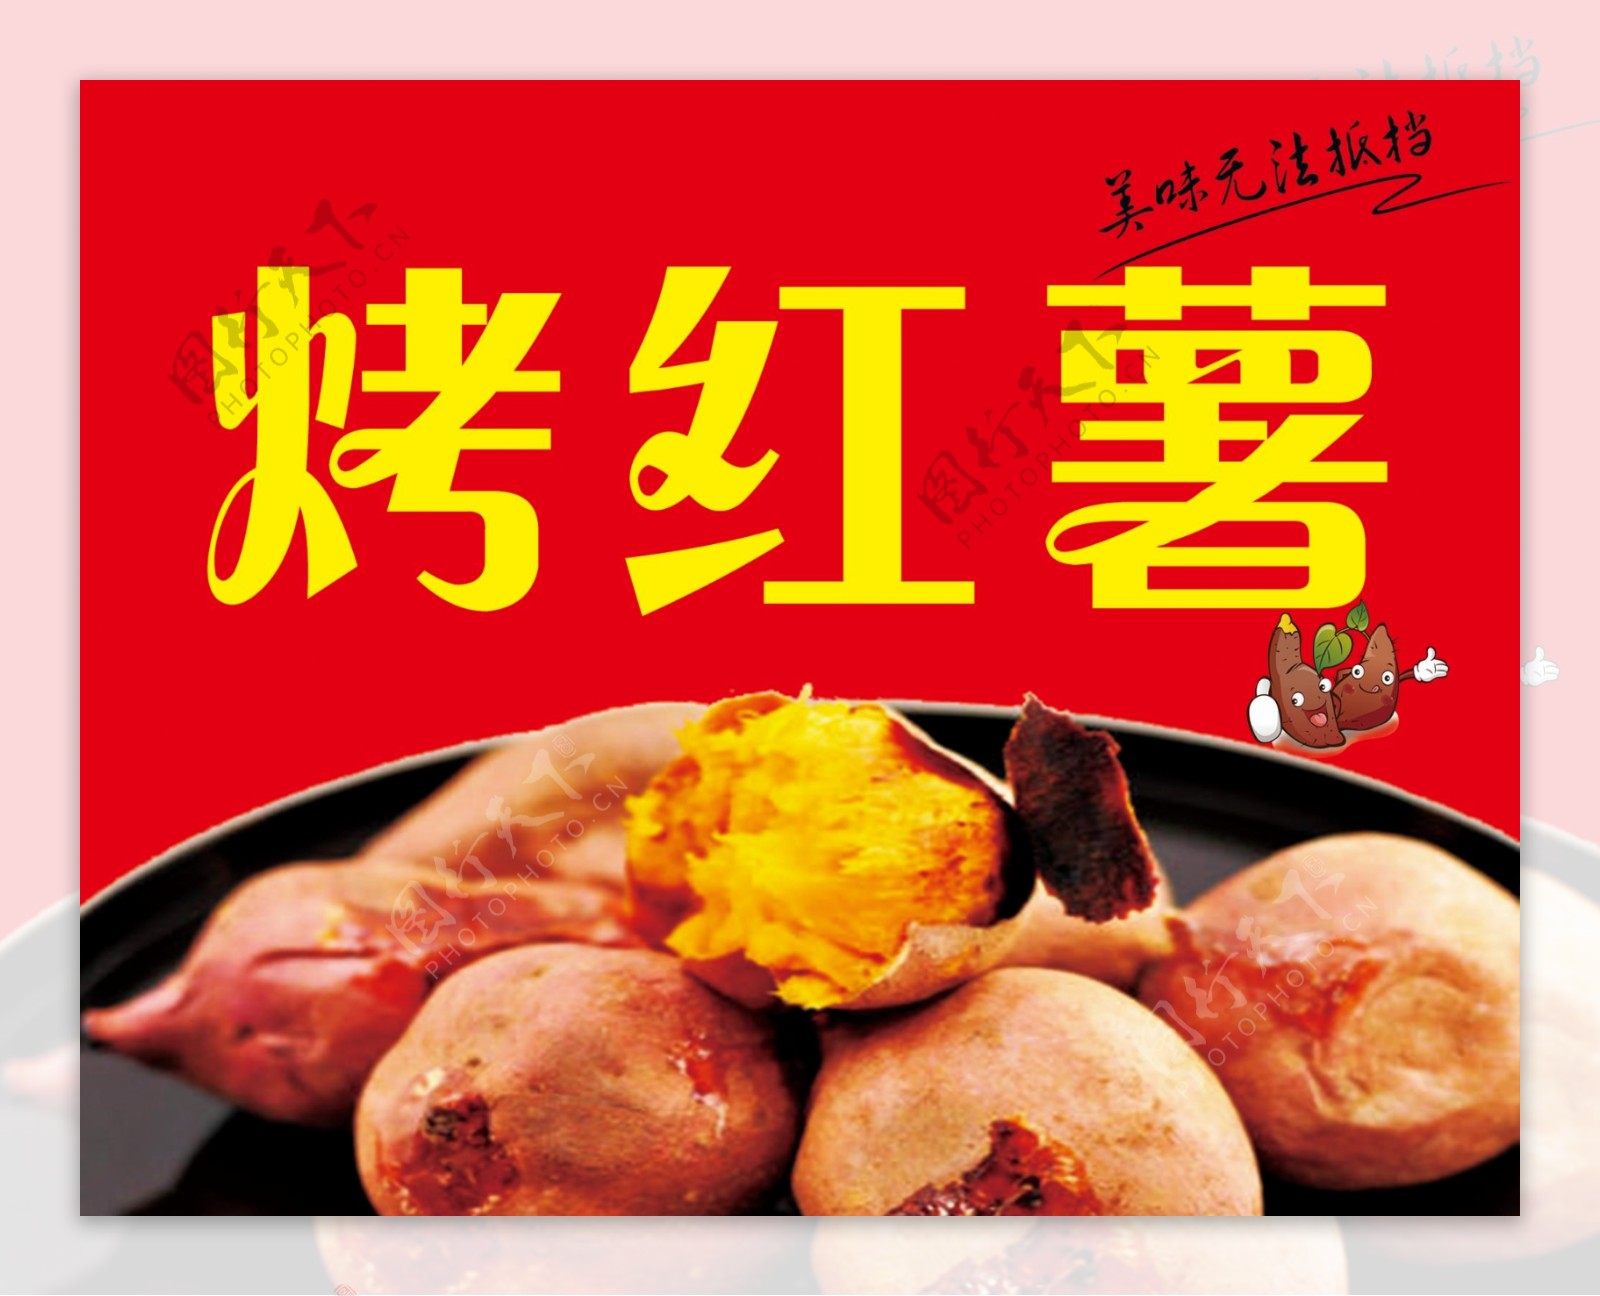 科学网—卖烤红薯 - 刁承泰的博文